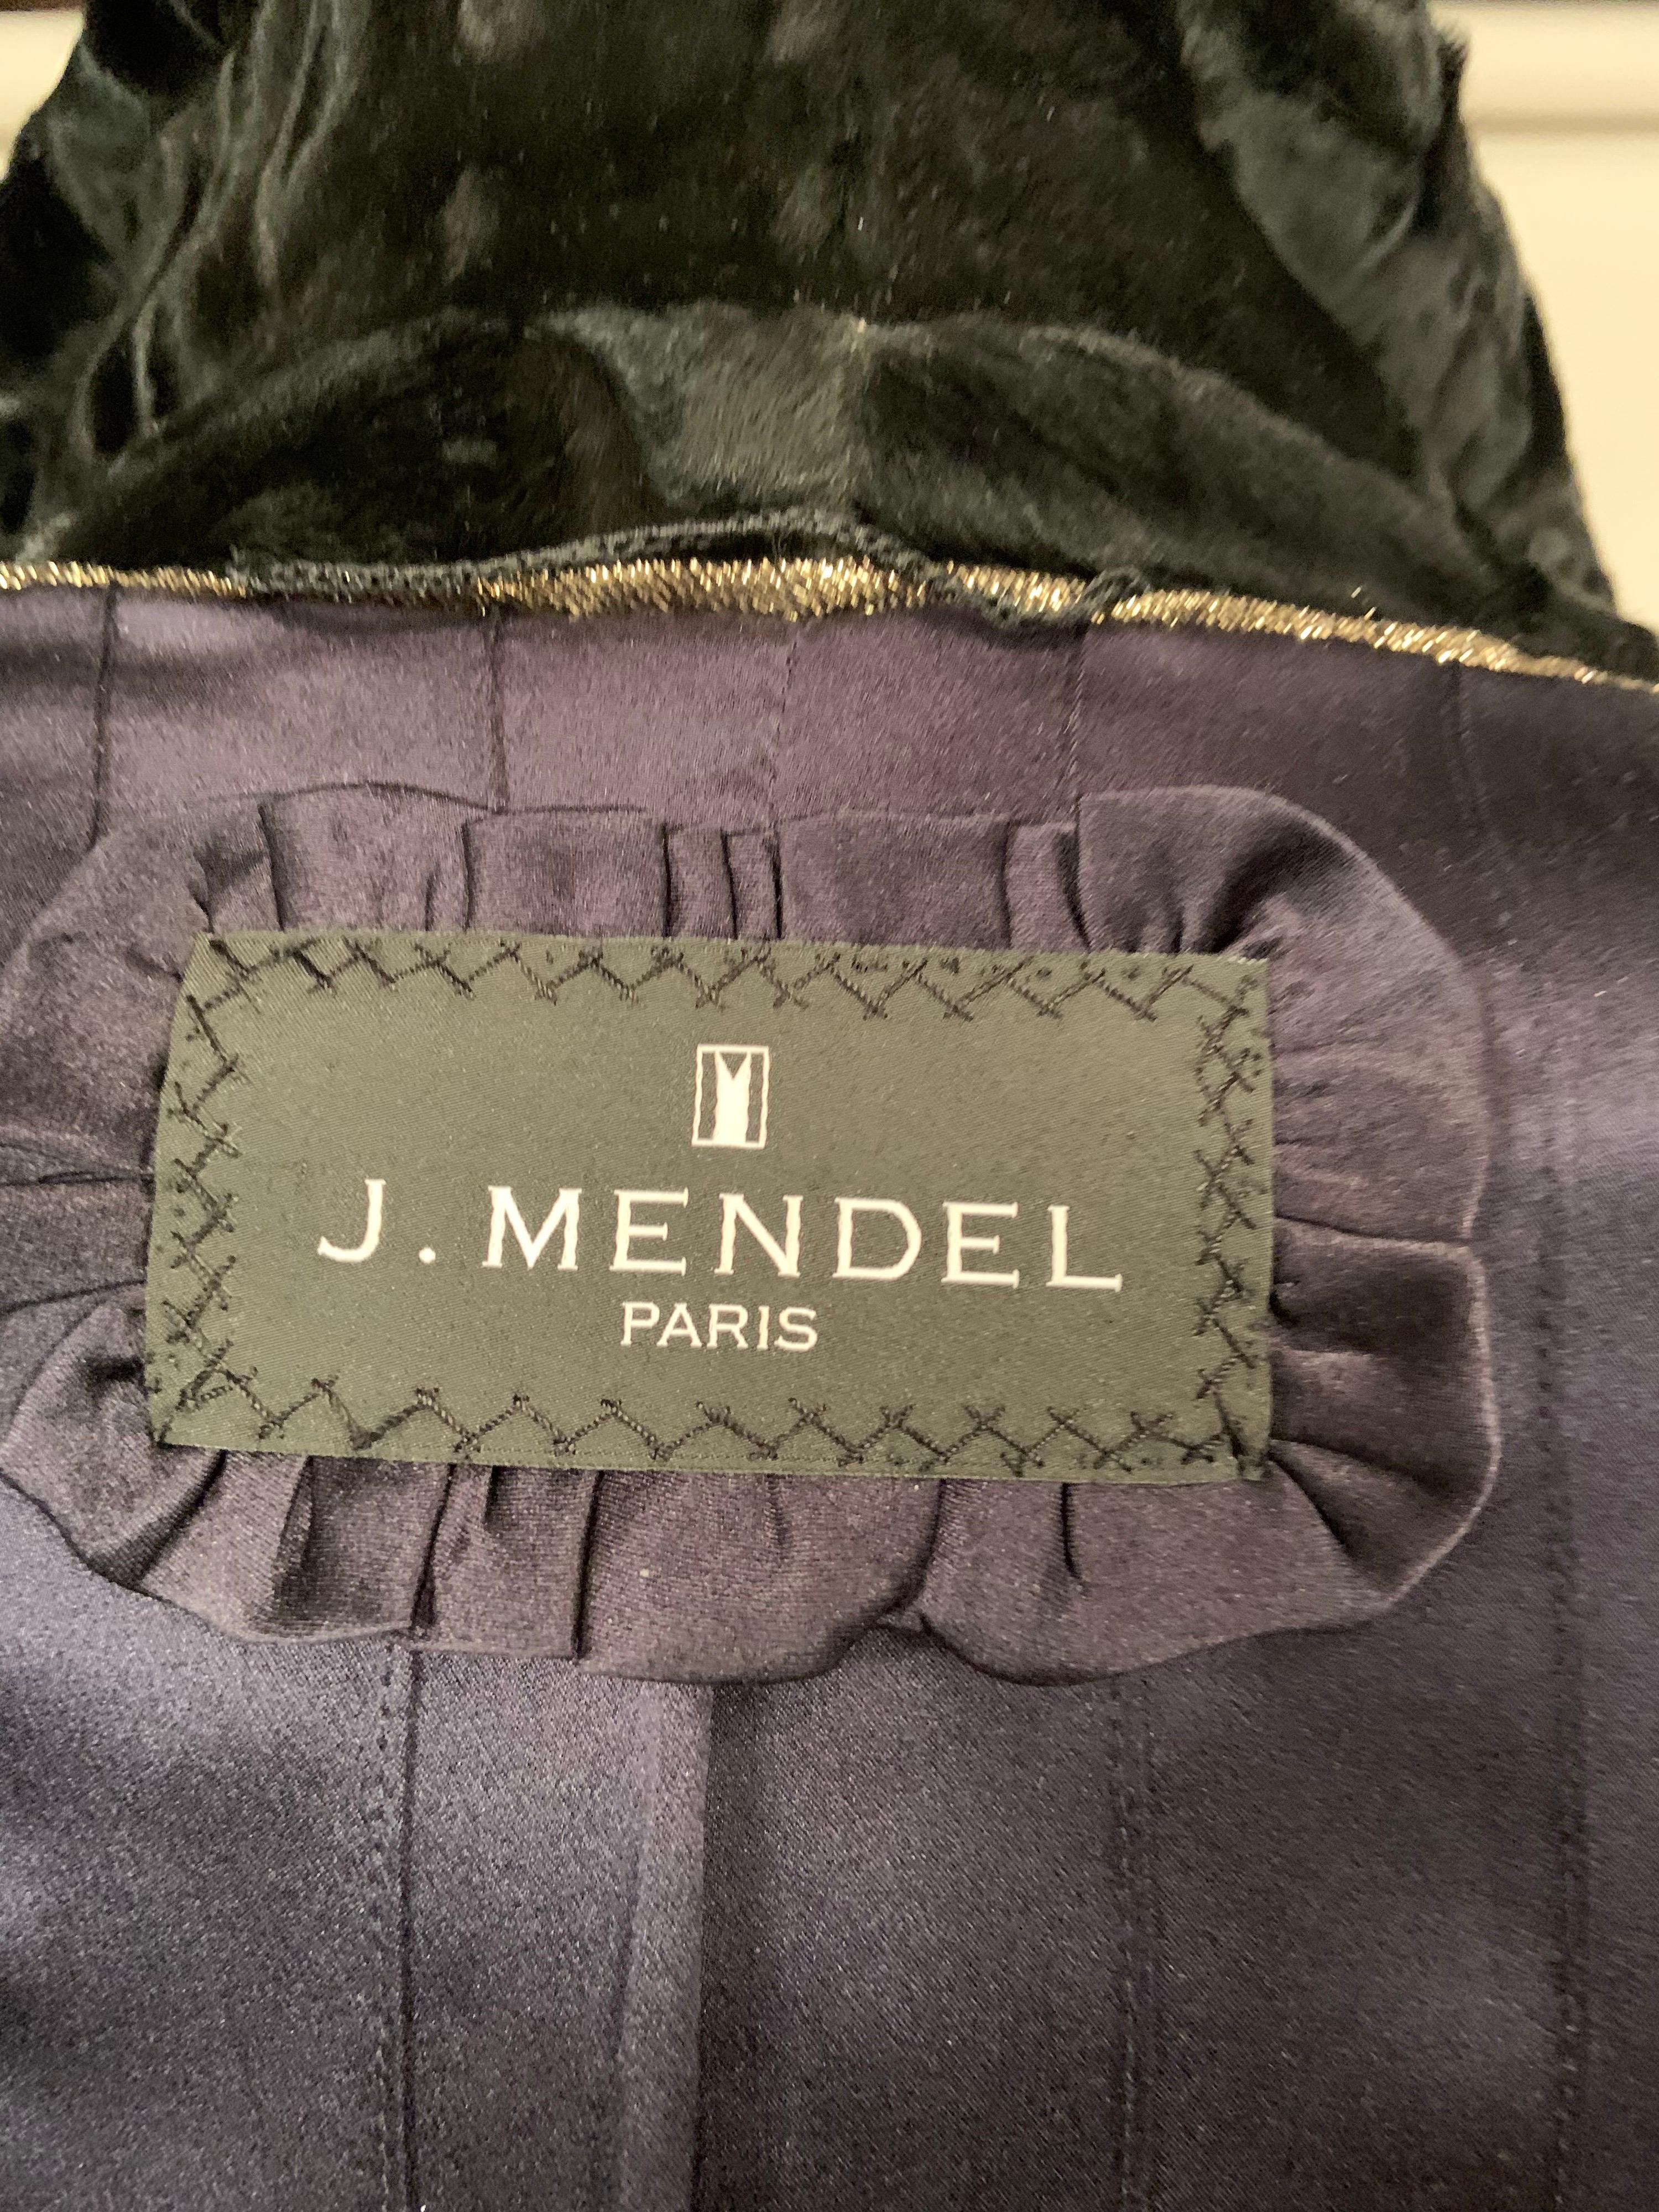 J. Mendel Black Swakara Coat Jagged Edge Hemline New Original Price Tag $23, 500 3